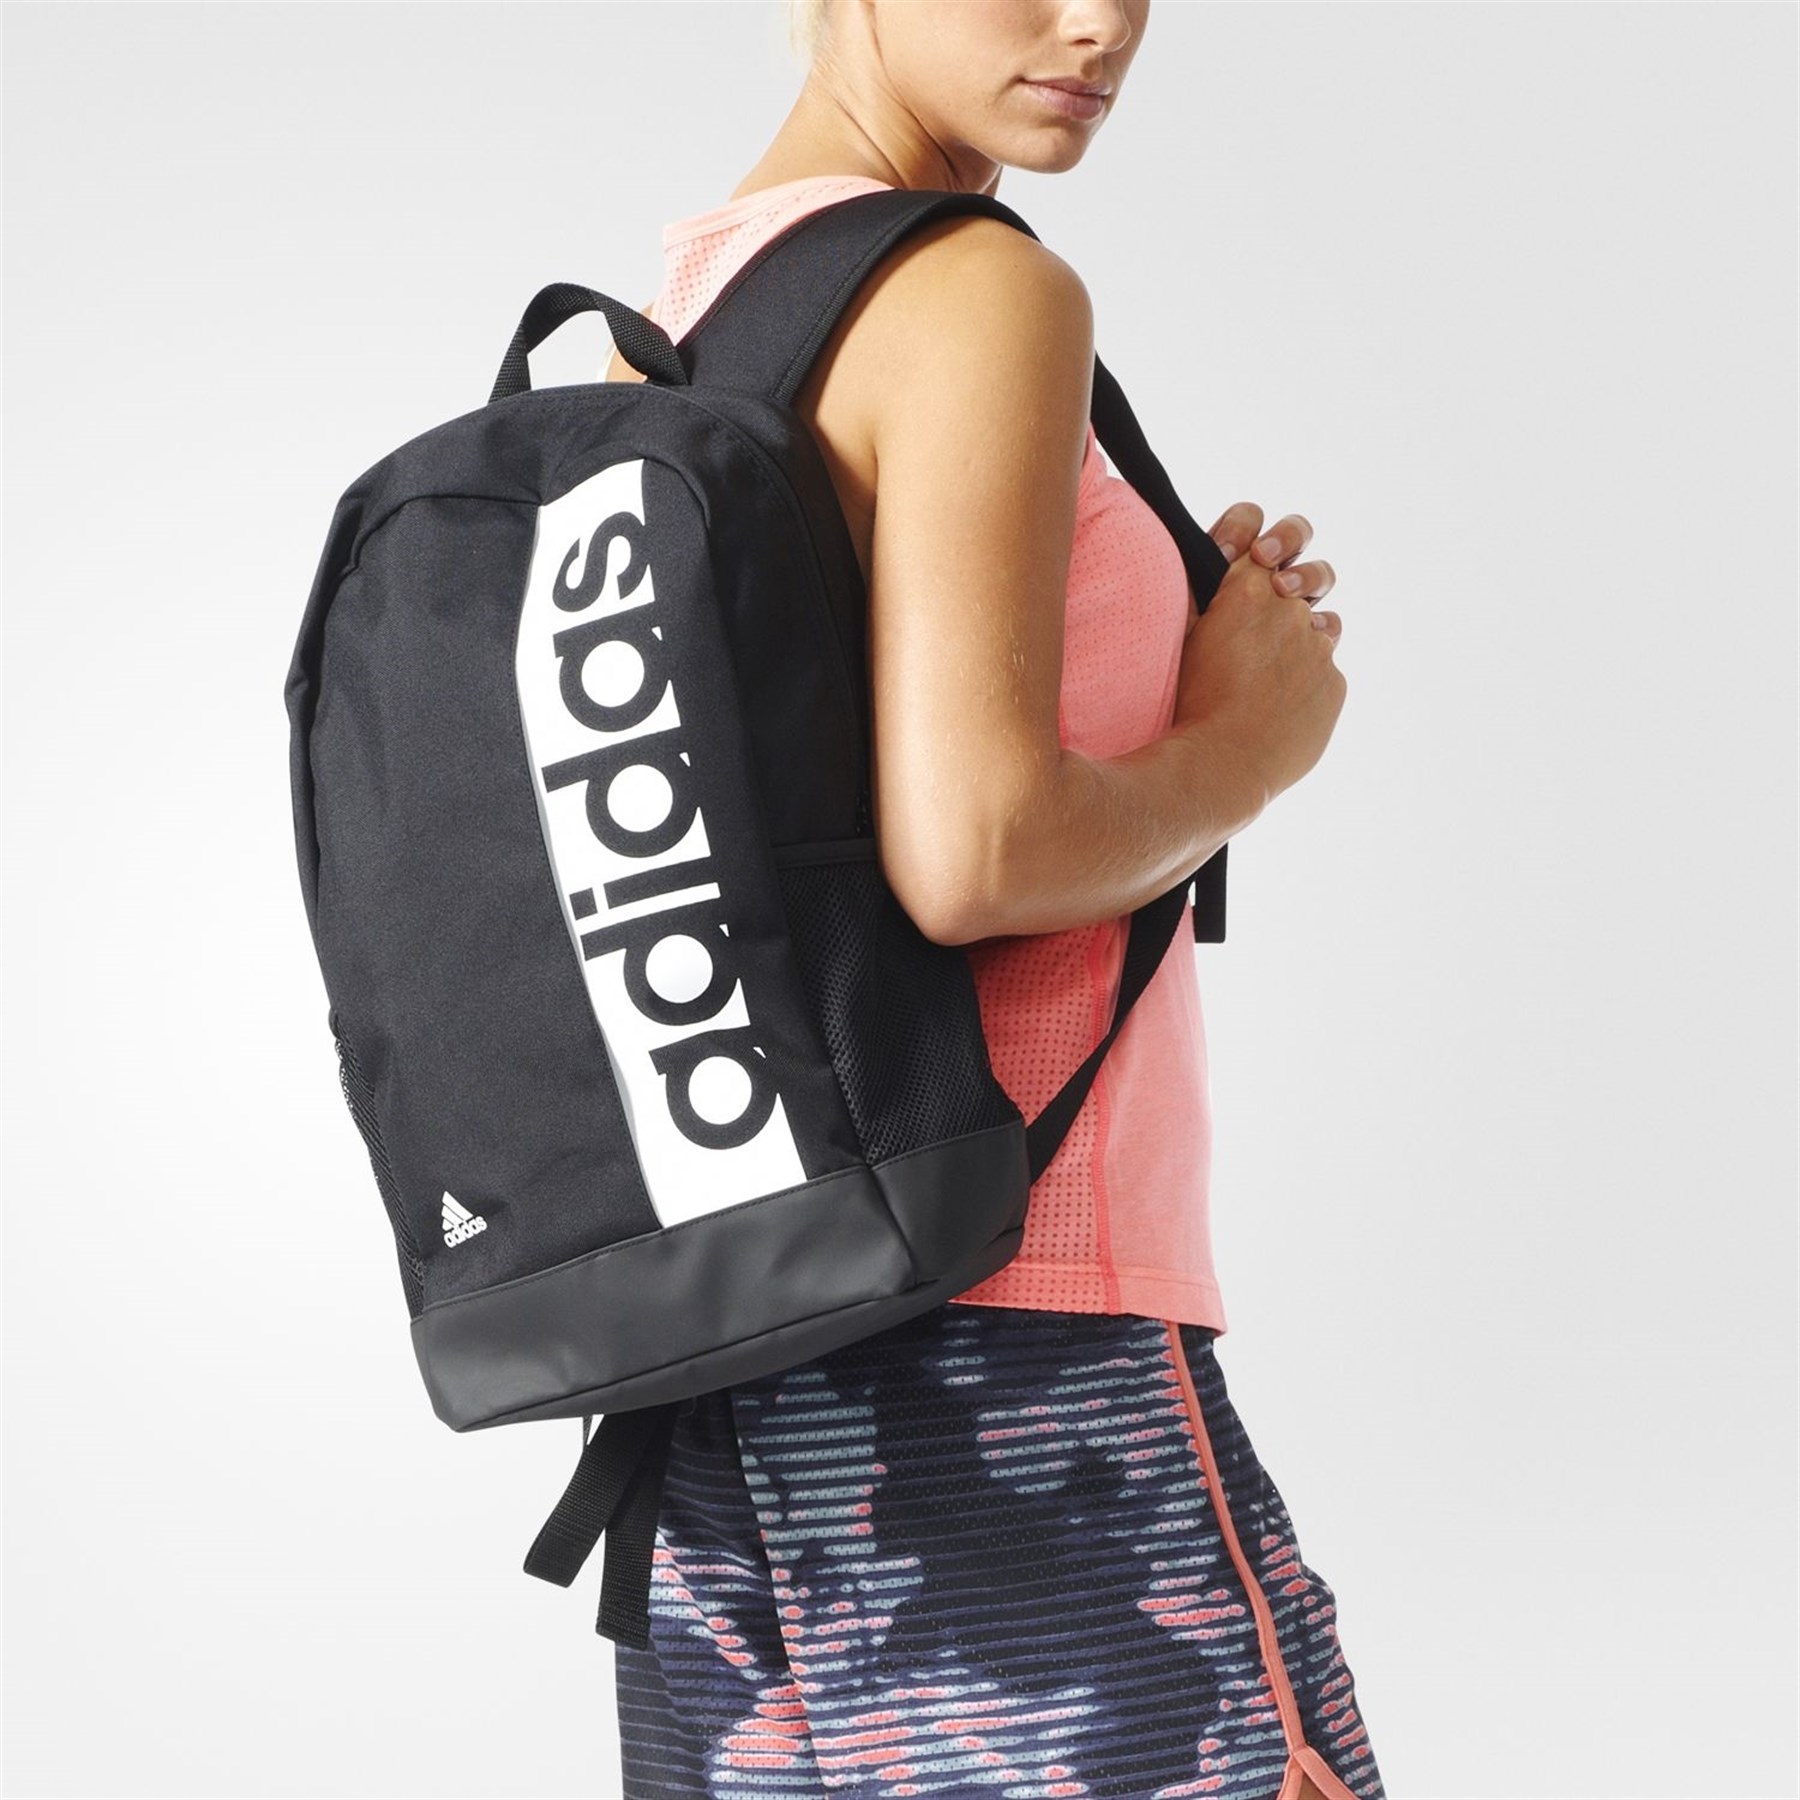 Со спортивной сумкой. Рюкзак адидас Performance. Adidas Core Linear. Мультиспортивный рюкзак adidas Linear. Девушка со спортивной сумкой.